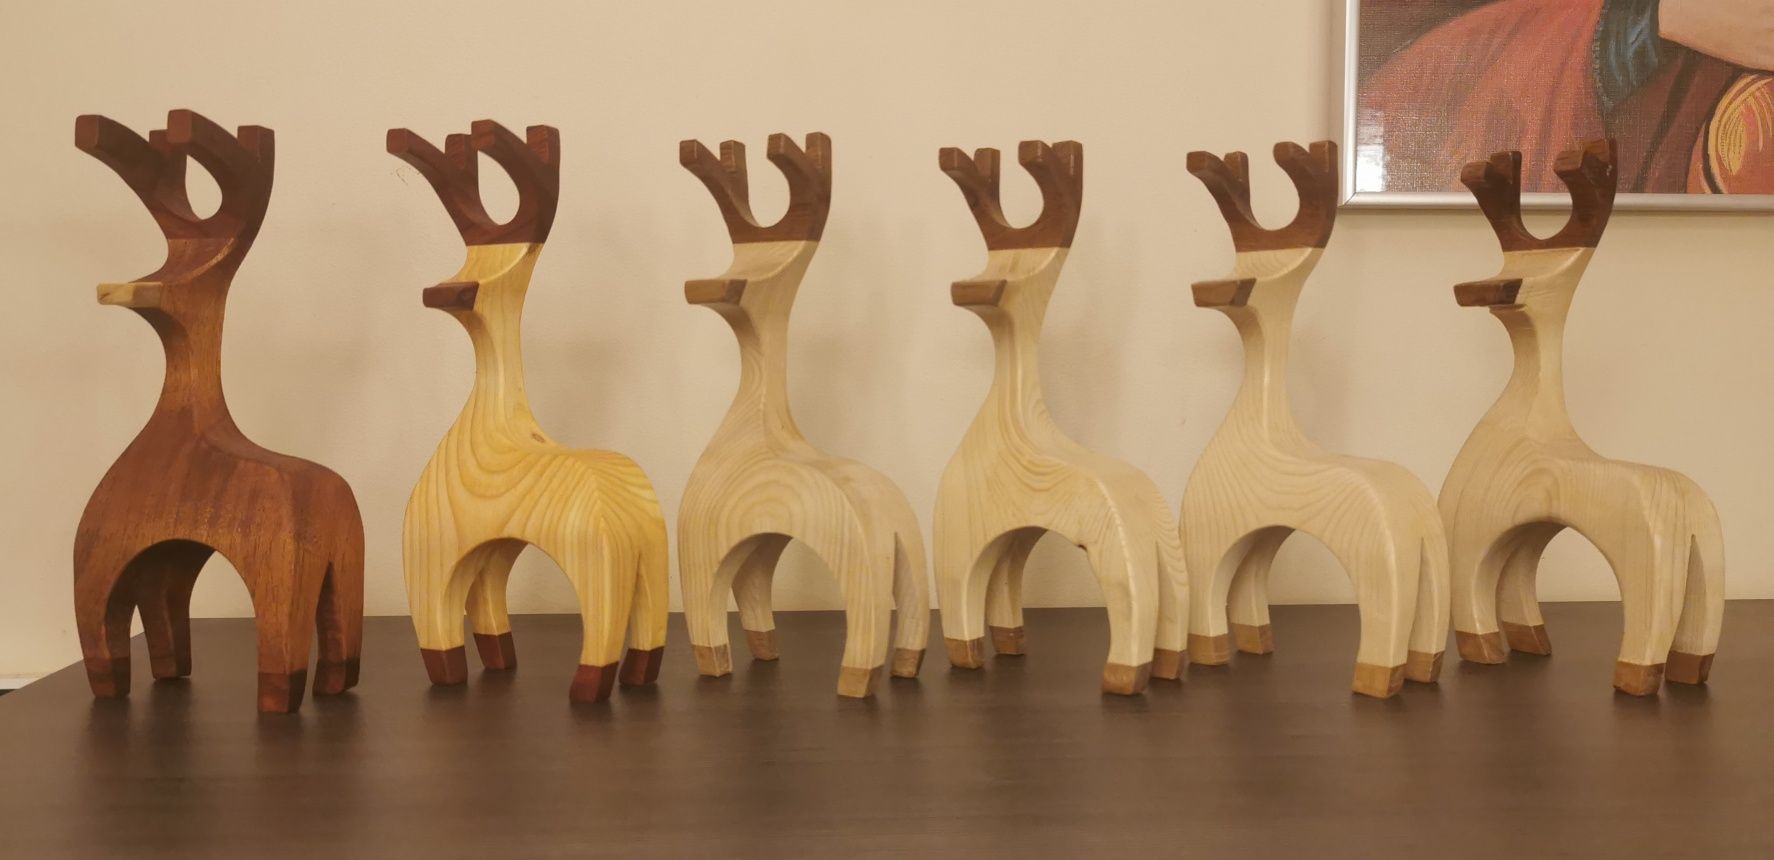 Drewniane figurki renifera 19 cm wysokości (renifer)